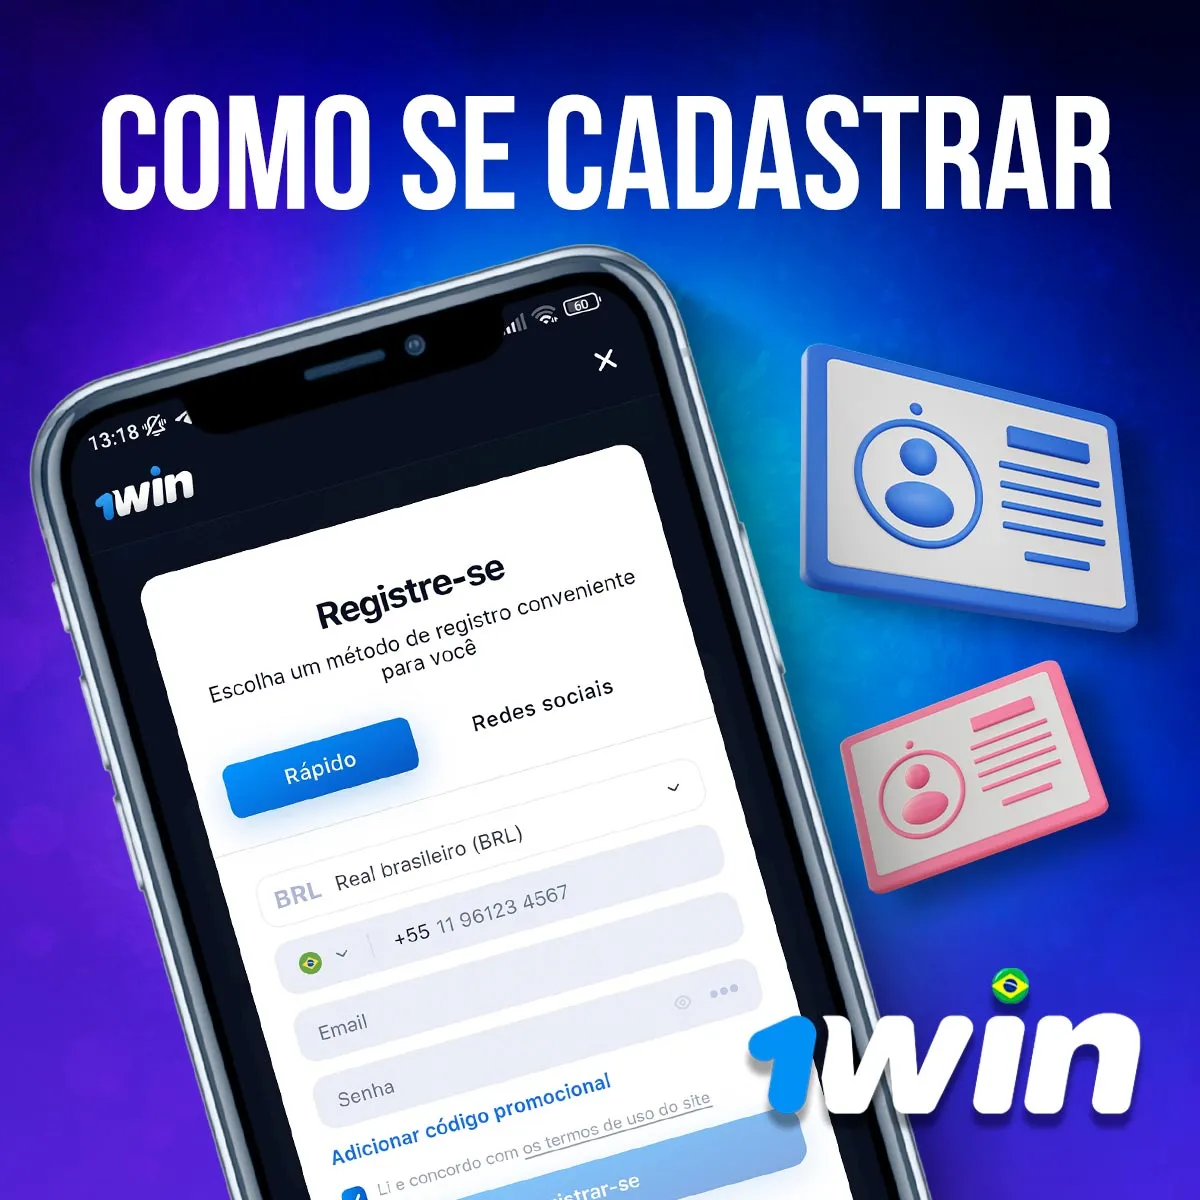 Instruções sobre como se registrar no aplicativo de apostas 1win no Brasil